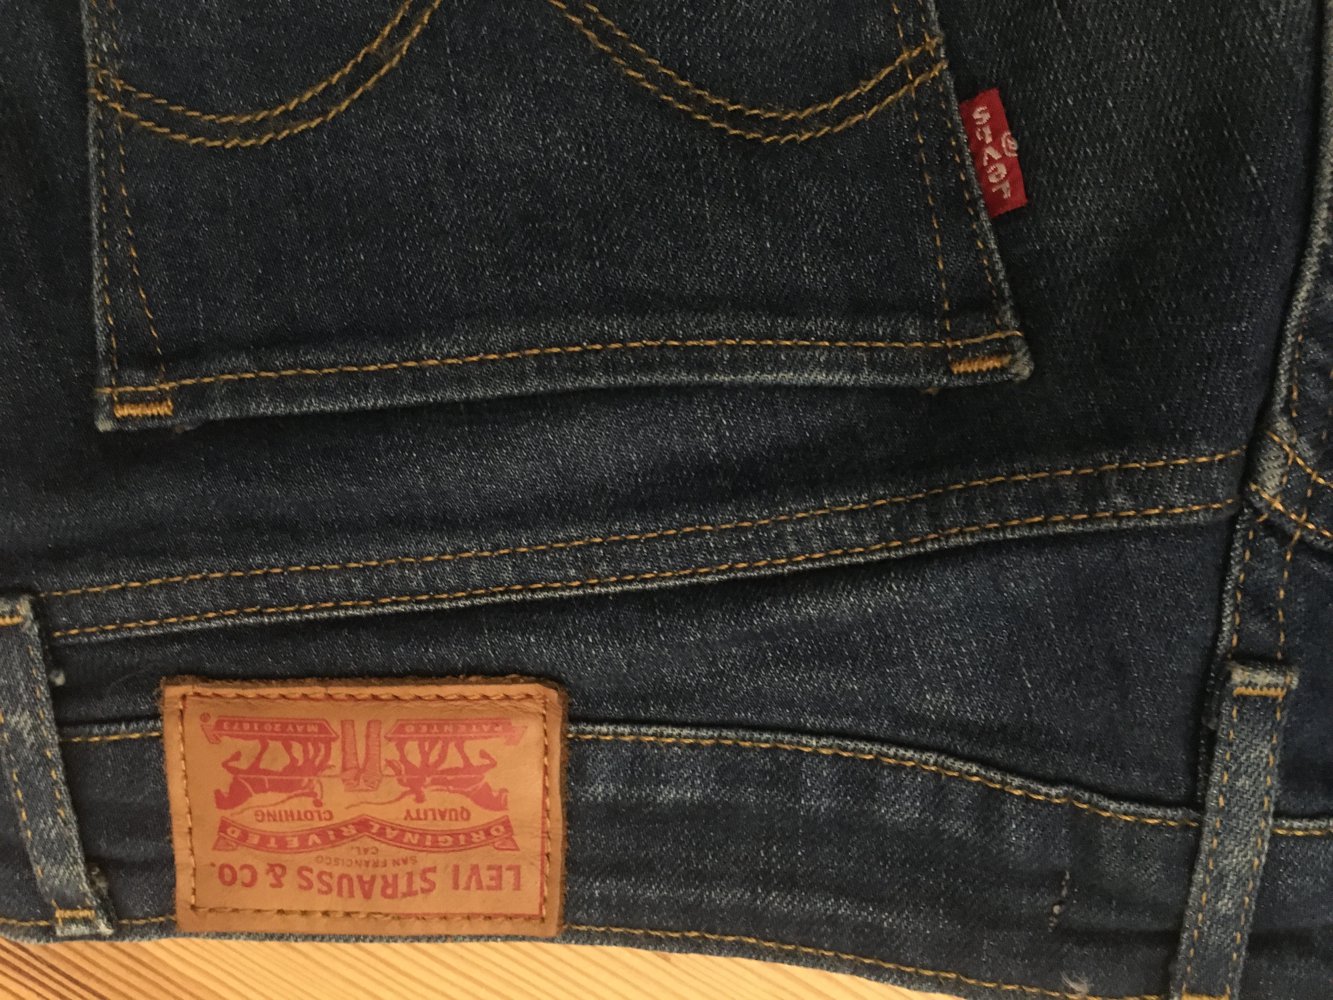 Levi’s Jeans 712 - Straight Cut W28/L34